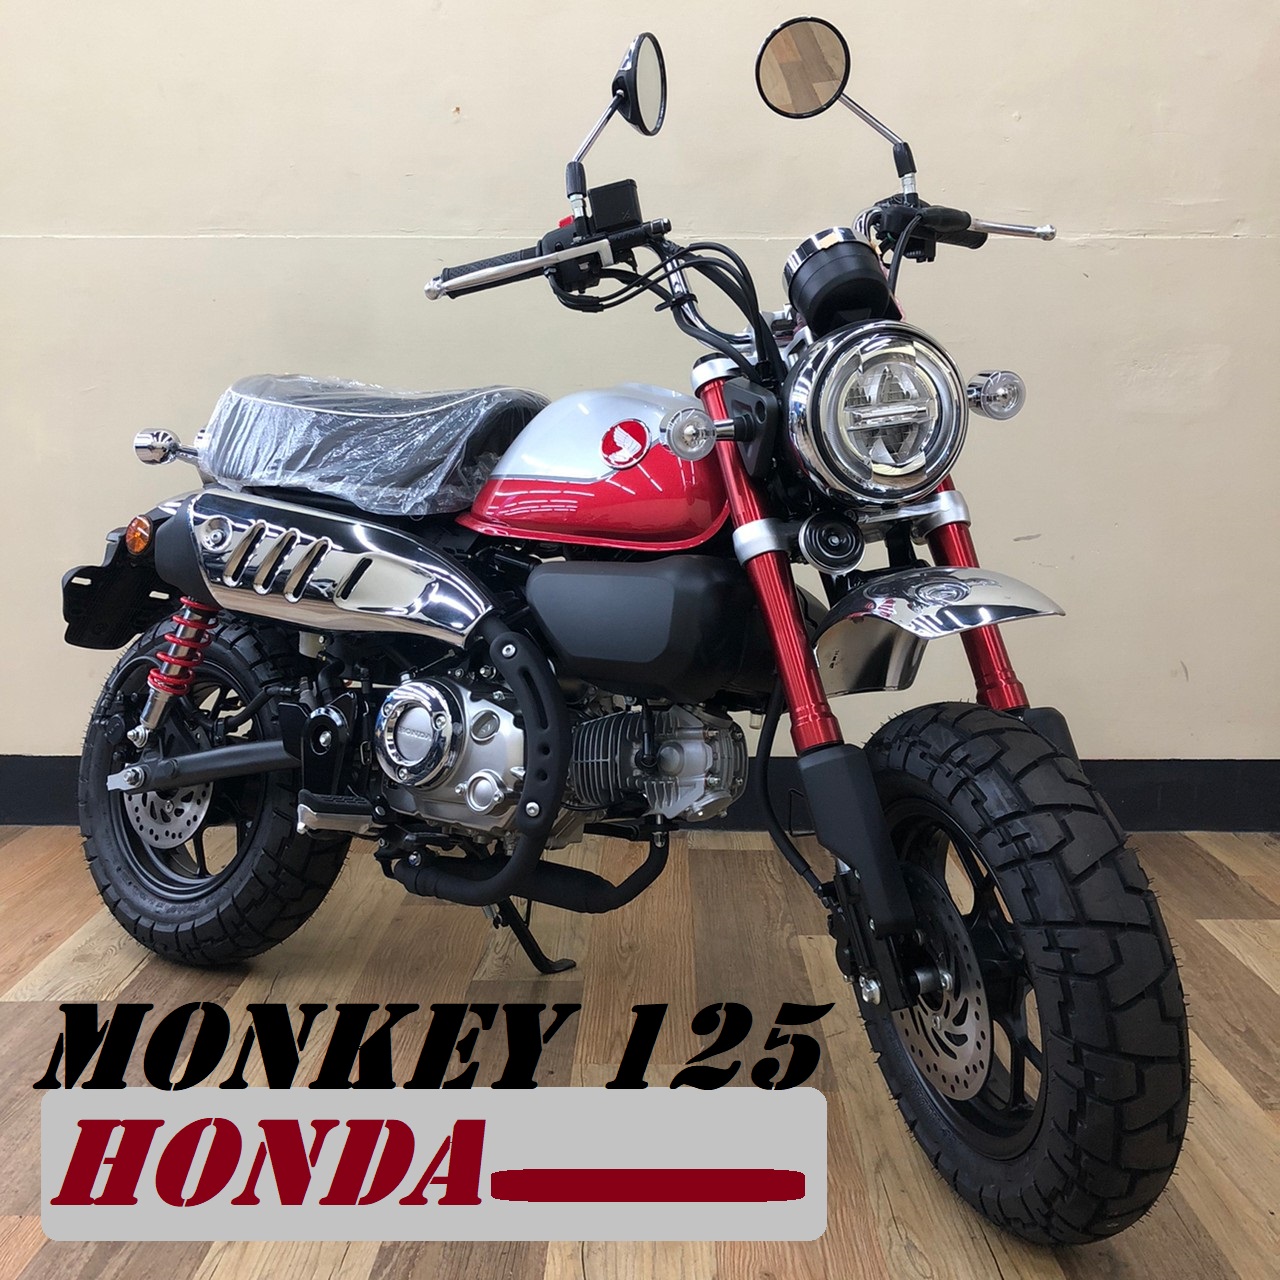 【飛翔國際】HONDA Monkey 125 - 「Webike-摩托車市」 【售】新車 2022 猴子 Monkey 125 泰規 可車換車 MONKEY125